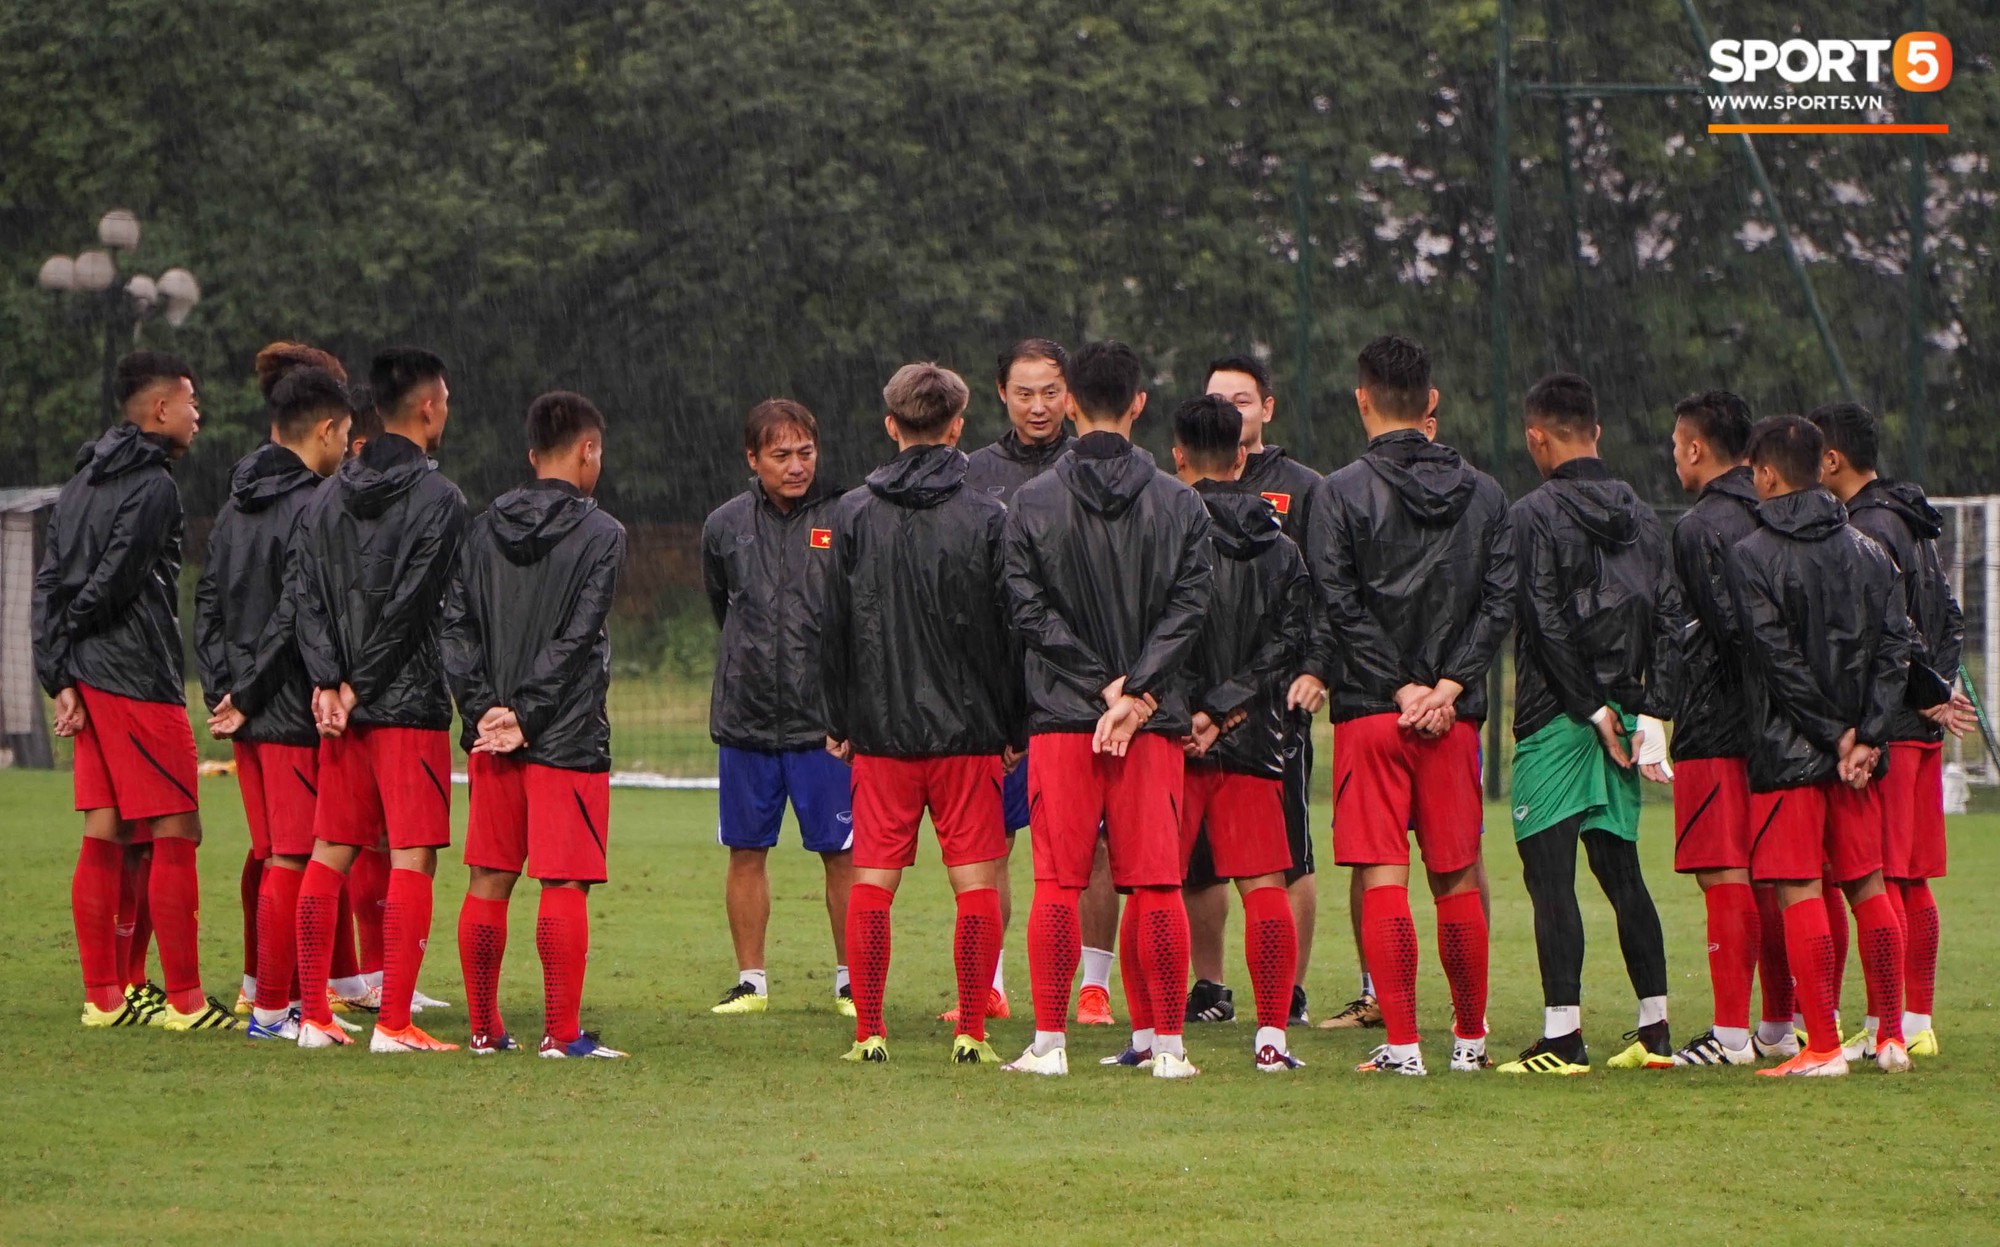 U23 Việt Nam tập luyện dưới trời mưa tầm tã trong ngày đầu làm việc với trợ lý mới thầy Park - Ảnh 1.